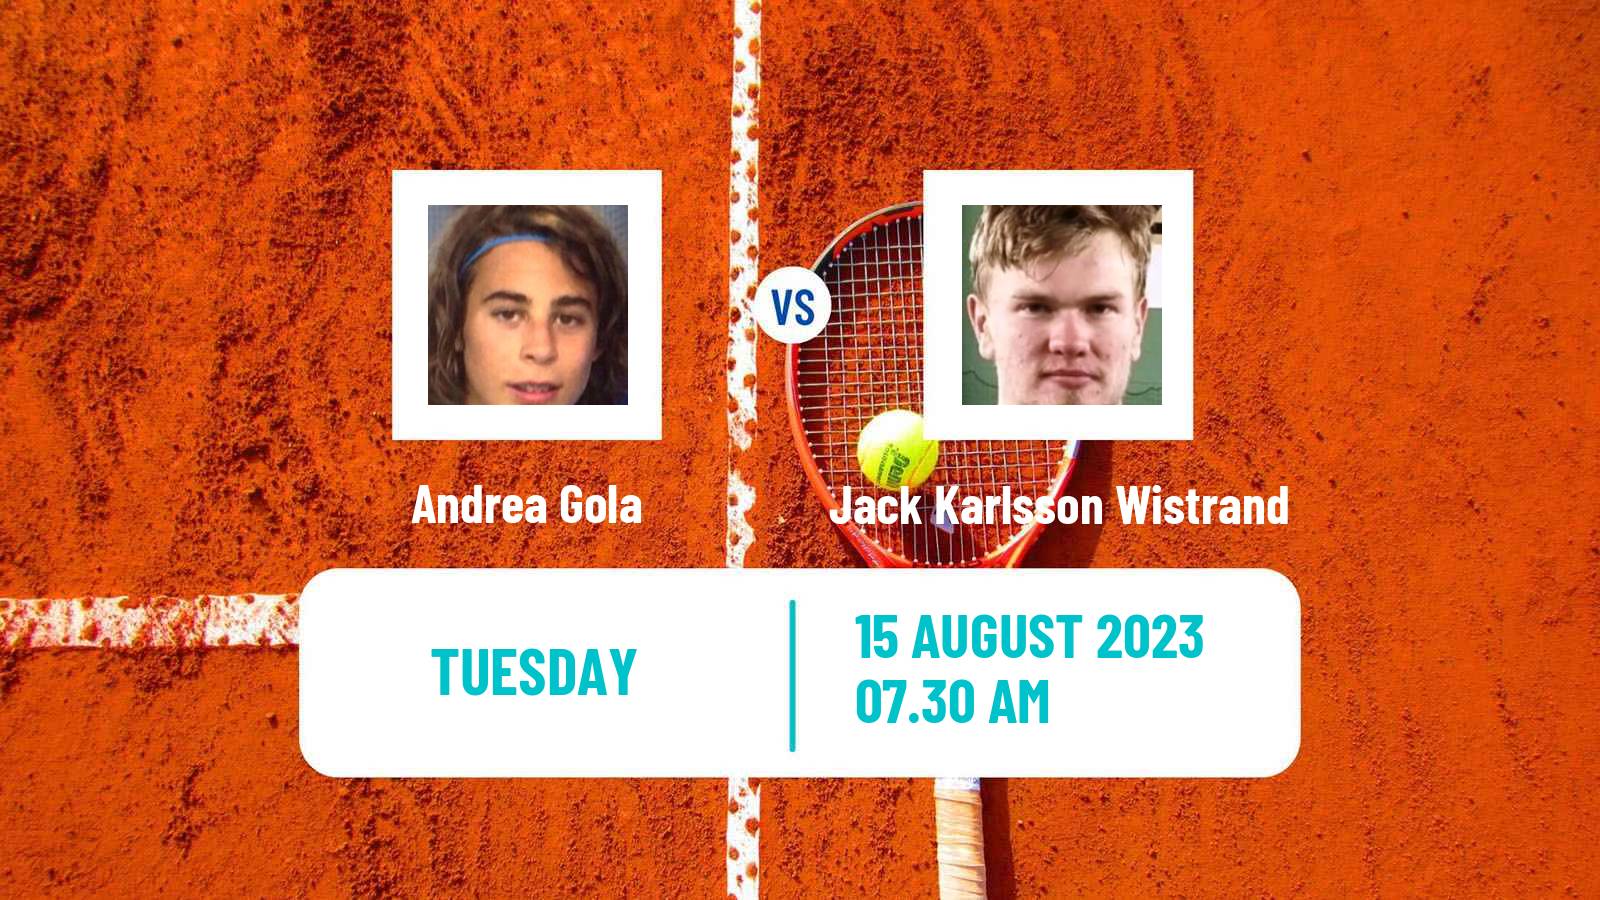 Tennis ITF M25 Ystad Men Andrea Gola - Jack Karlsson Wistrand